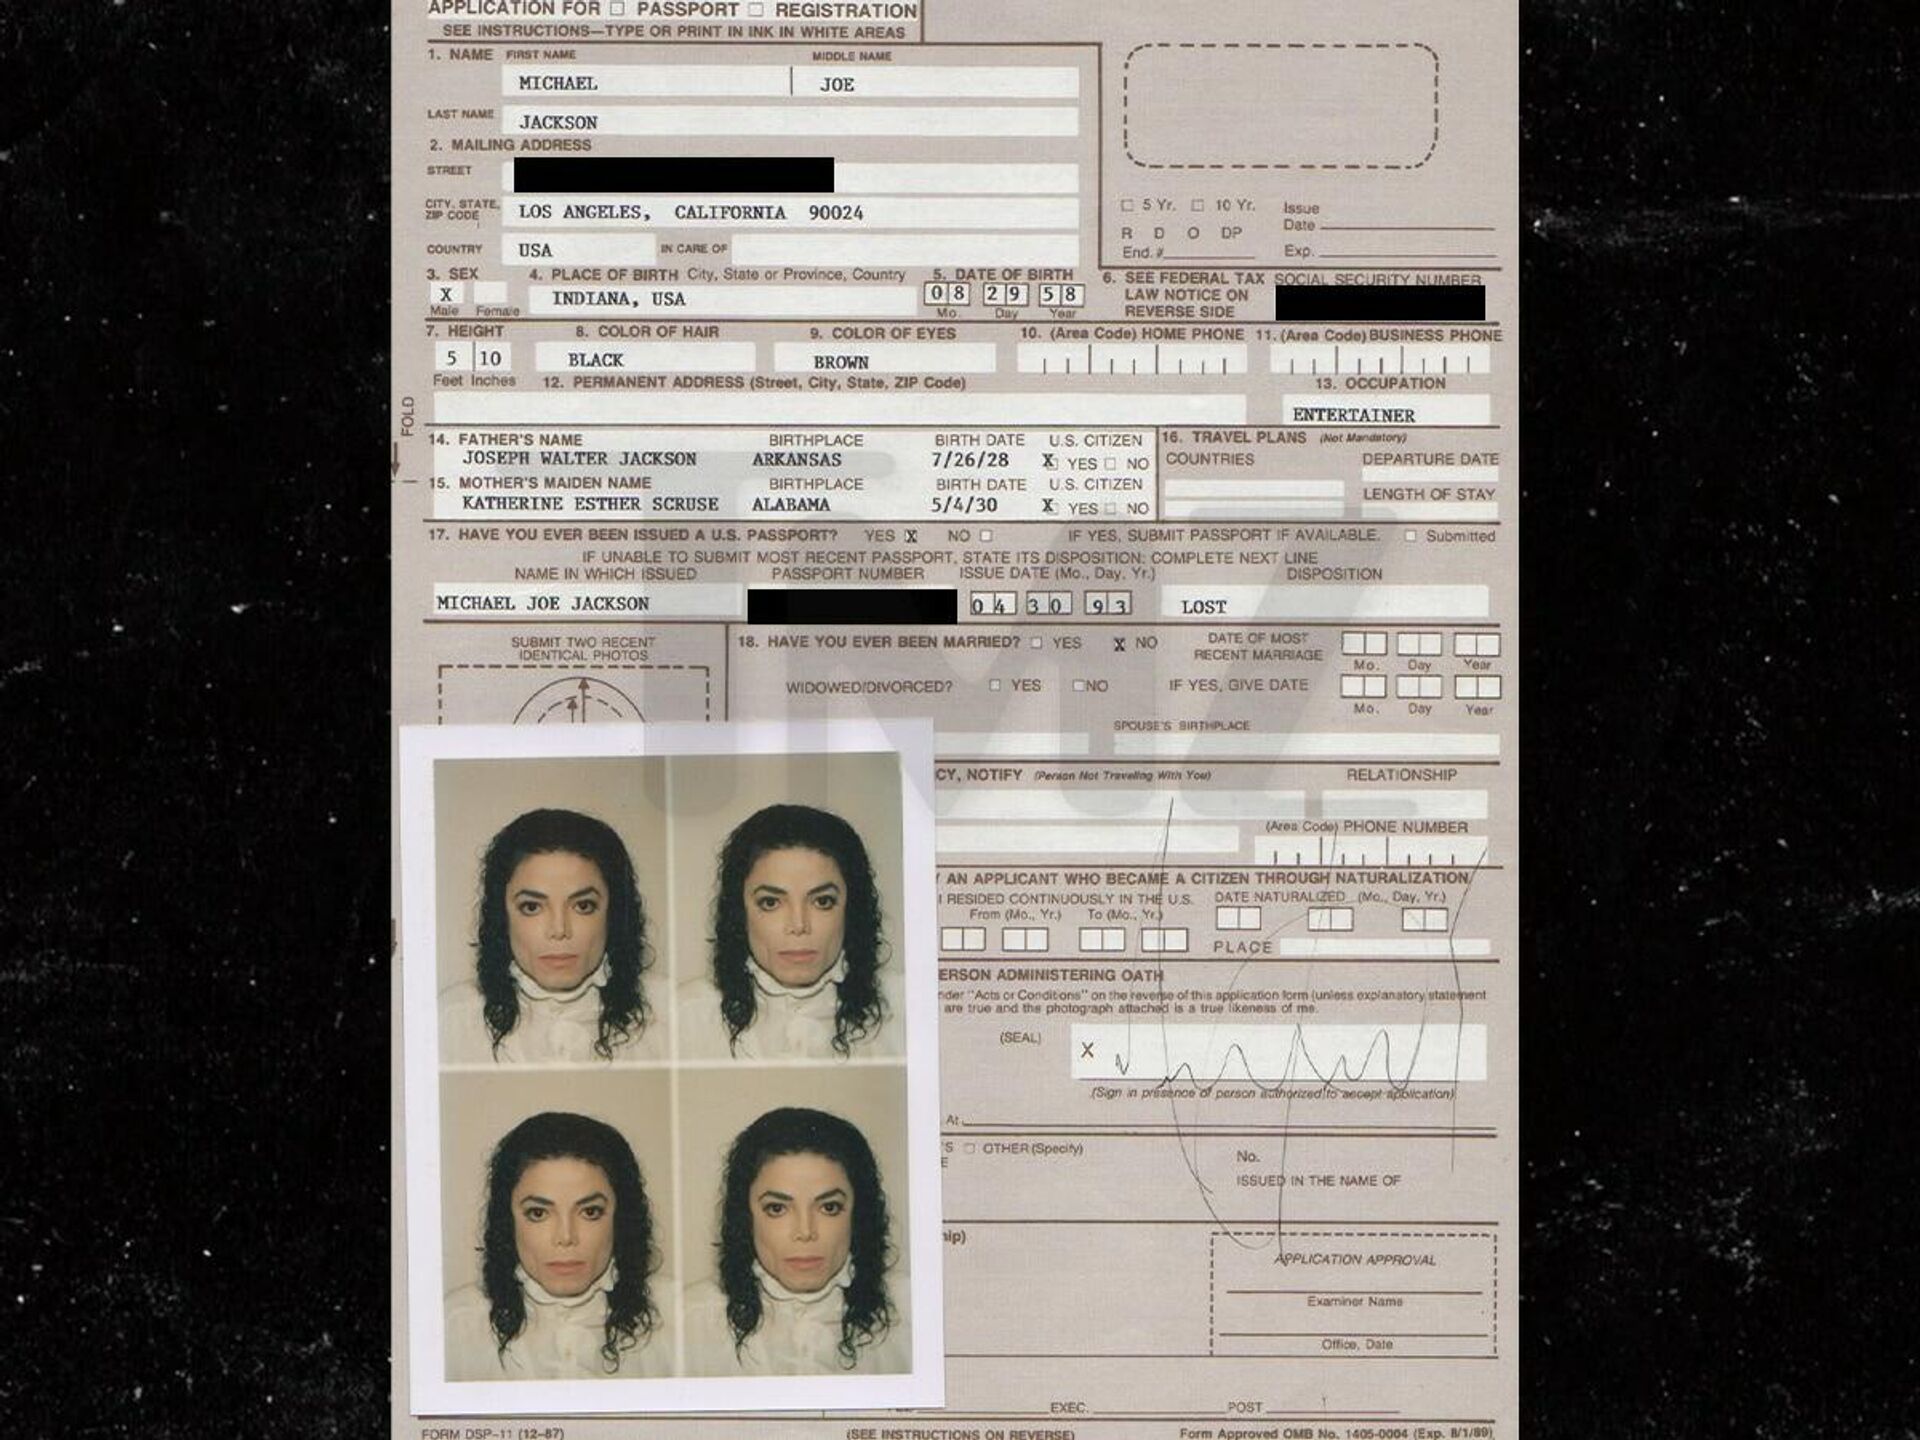 Michael Jackson'ın kaybettiği pasaportunun yenisini almak üzere doldurduğu başvuru formu - Sputnik Türkiye, 1920, 18.10.2021